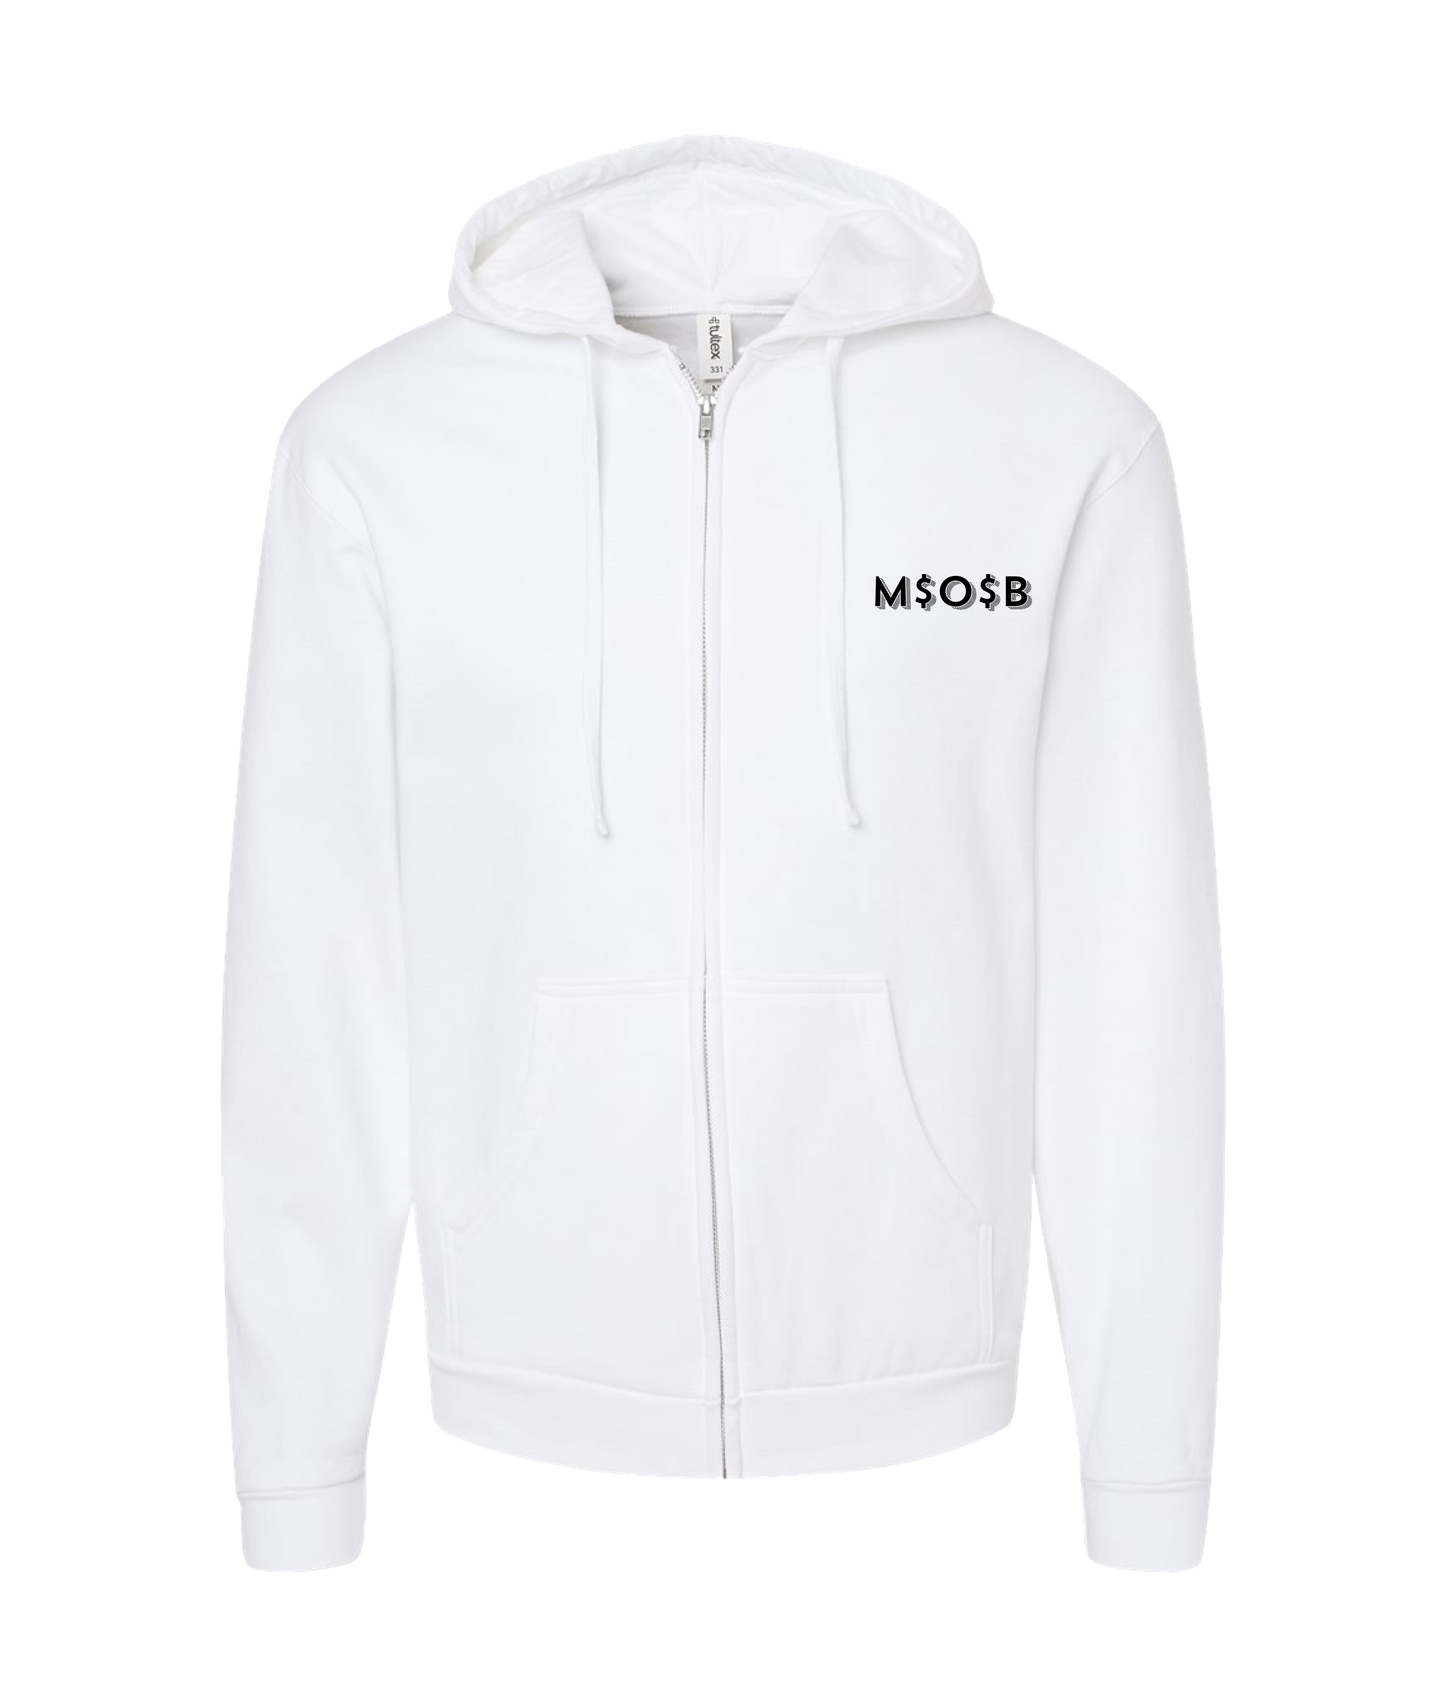 Mindonbags - MOB - White Zip Up Hoodie